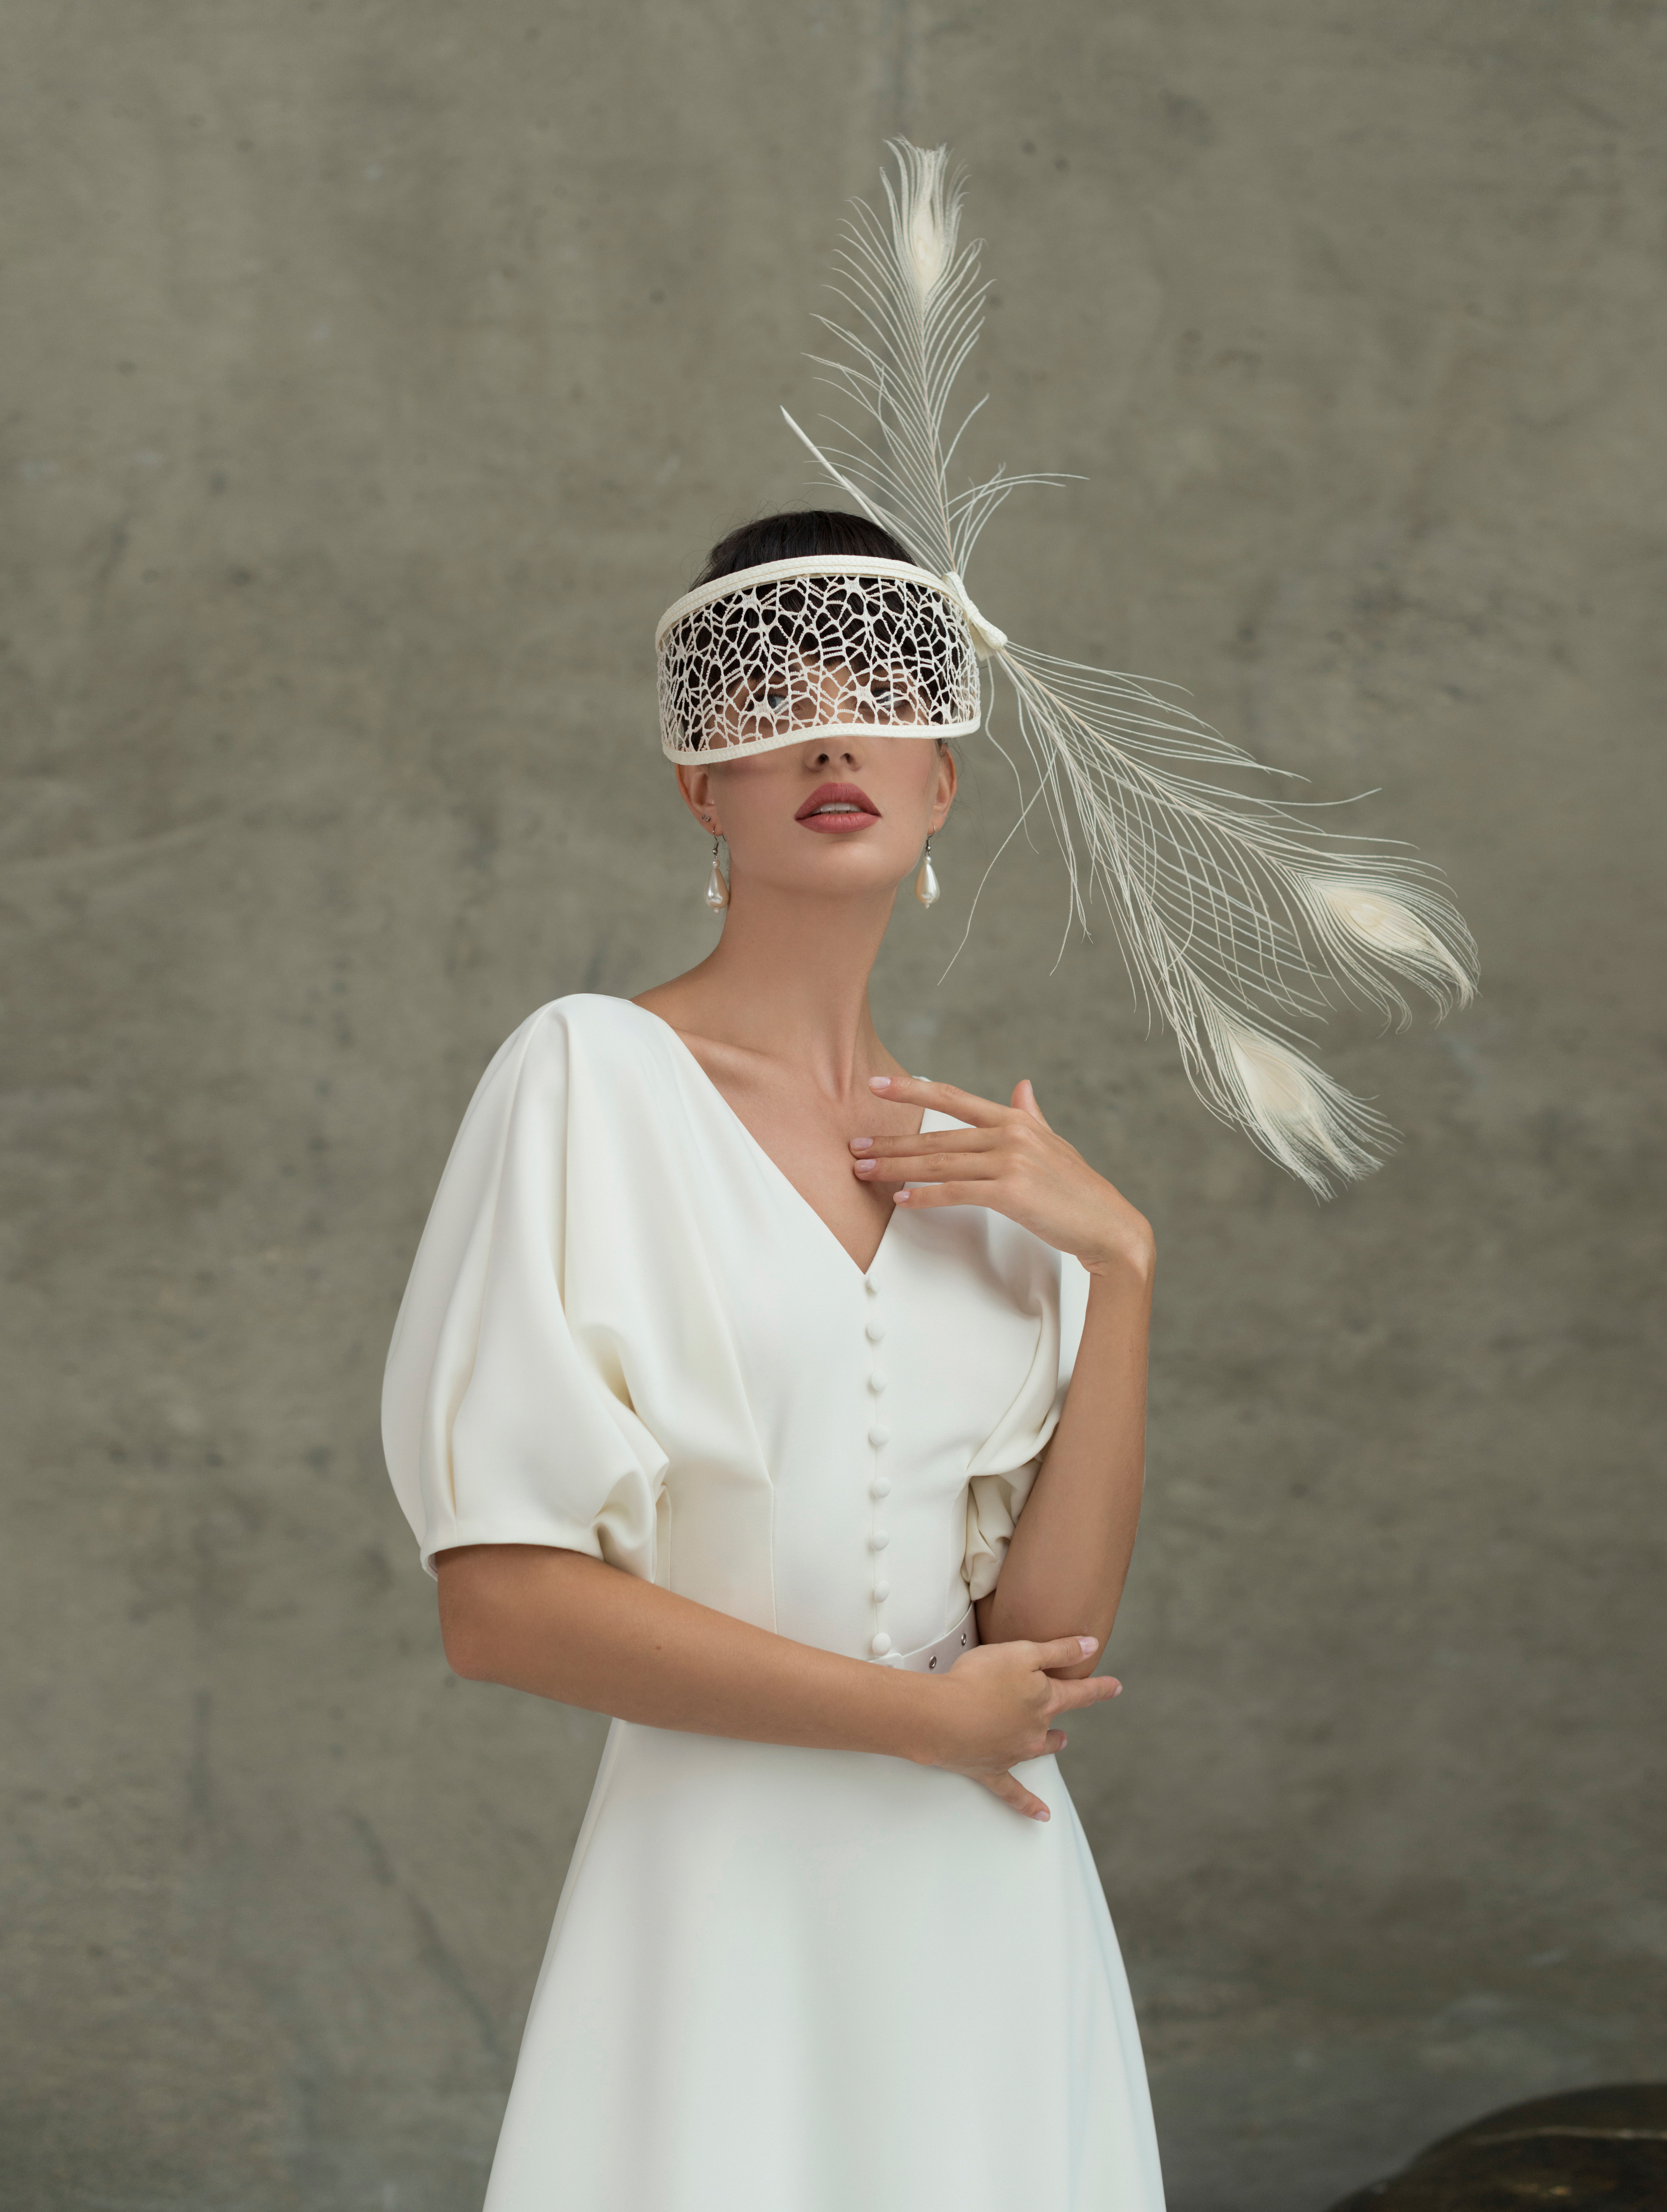 Купить свадебное платье «Комплимент» Мэрри Марк из коллекции 2022 года в Мэри Трюфель